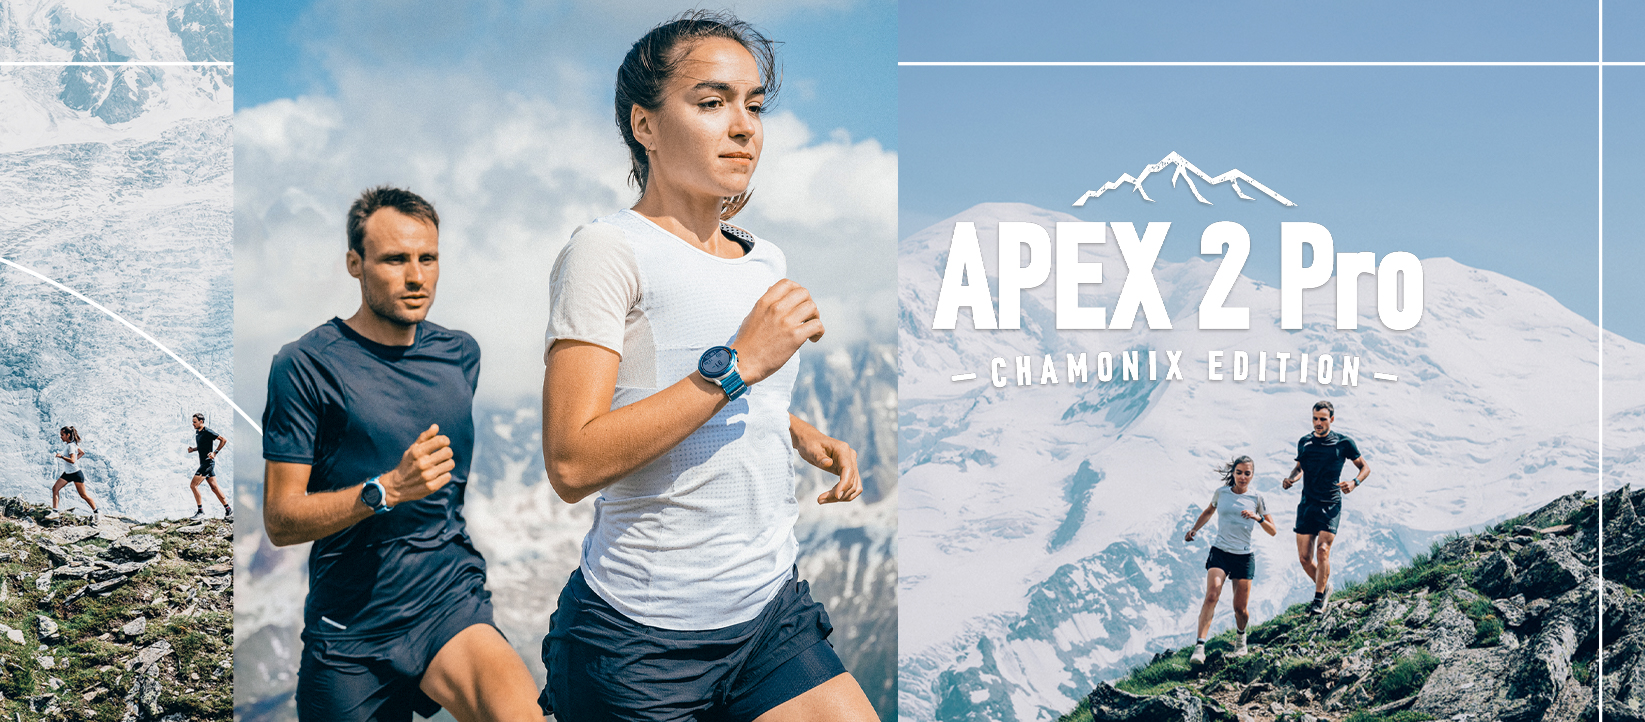 coros apex 2 pro chamonix 8 Đồng hồ thể thao GPS Coros Apex 2 Pro - Chamonix Edition (Phiên bản giới hạn) - YCB.vn